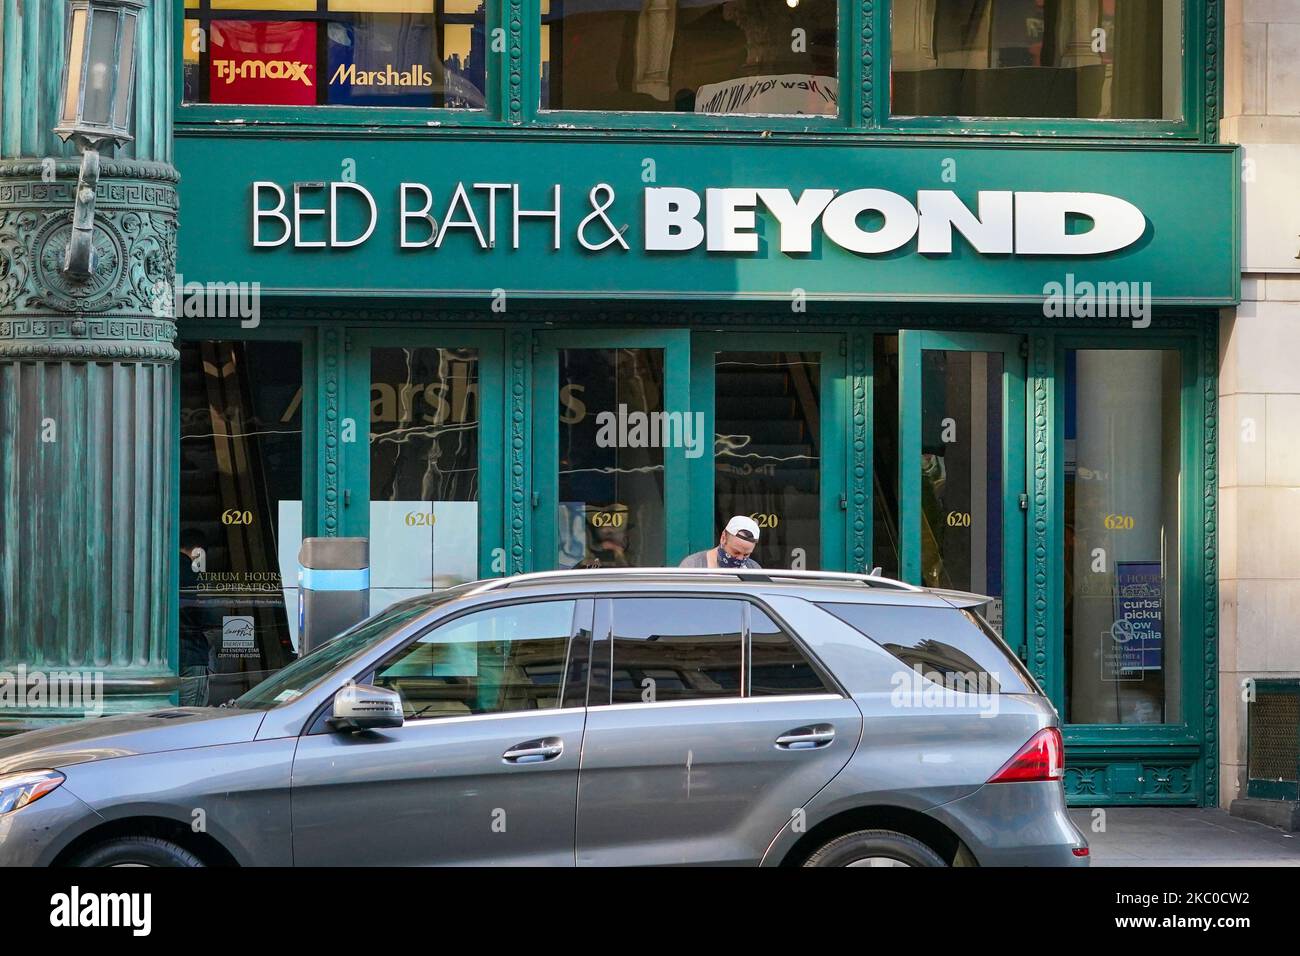 Ein Blick auf Bed Bath & Beyond Branch in New York City am 22. September 2020. Bed Bath & Beyond kündigte an, in den nächsten zwei Jahren rund 200 Geschäfte dauerhaft zu schließen. Diese Ankündigung scheint die erste Iteration dieses Plans zu sein, so der Bericht. (Foto von John Nacion/NurPhoto) Stockfoto